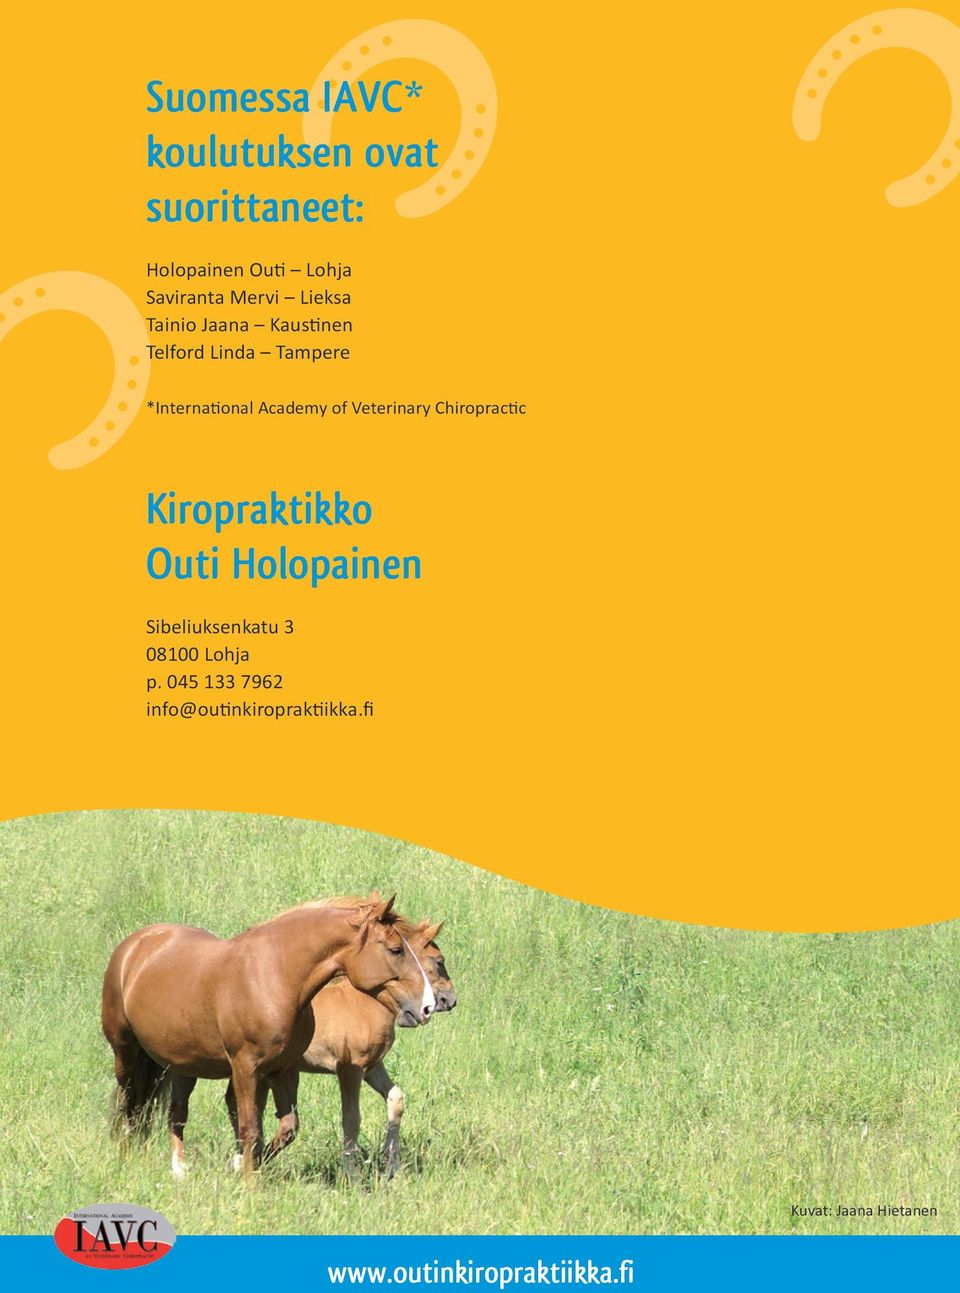 Chiropractic Kiropraktikko Outi Holopainen Sibeliuksenkatu 3 08100 Lohja p.